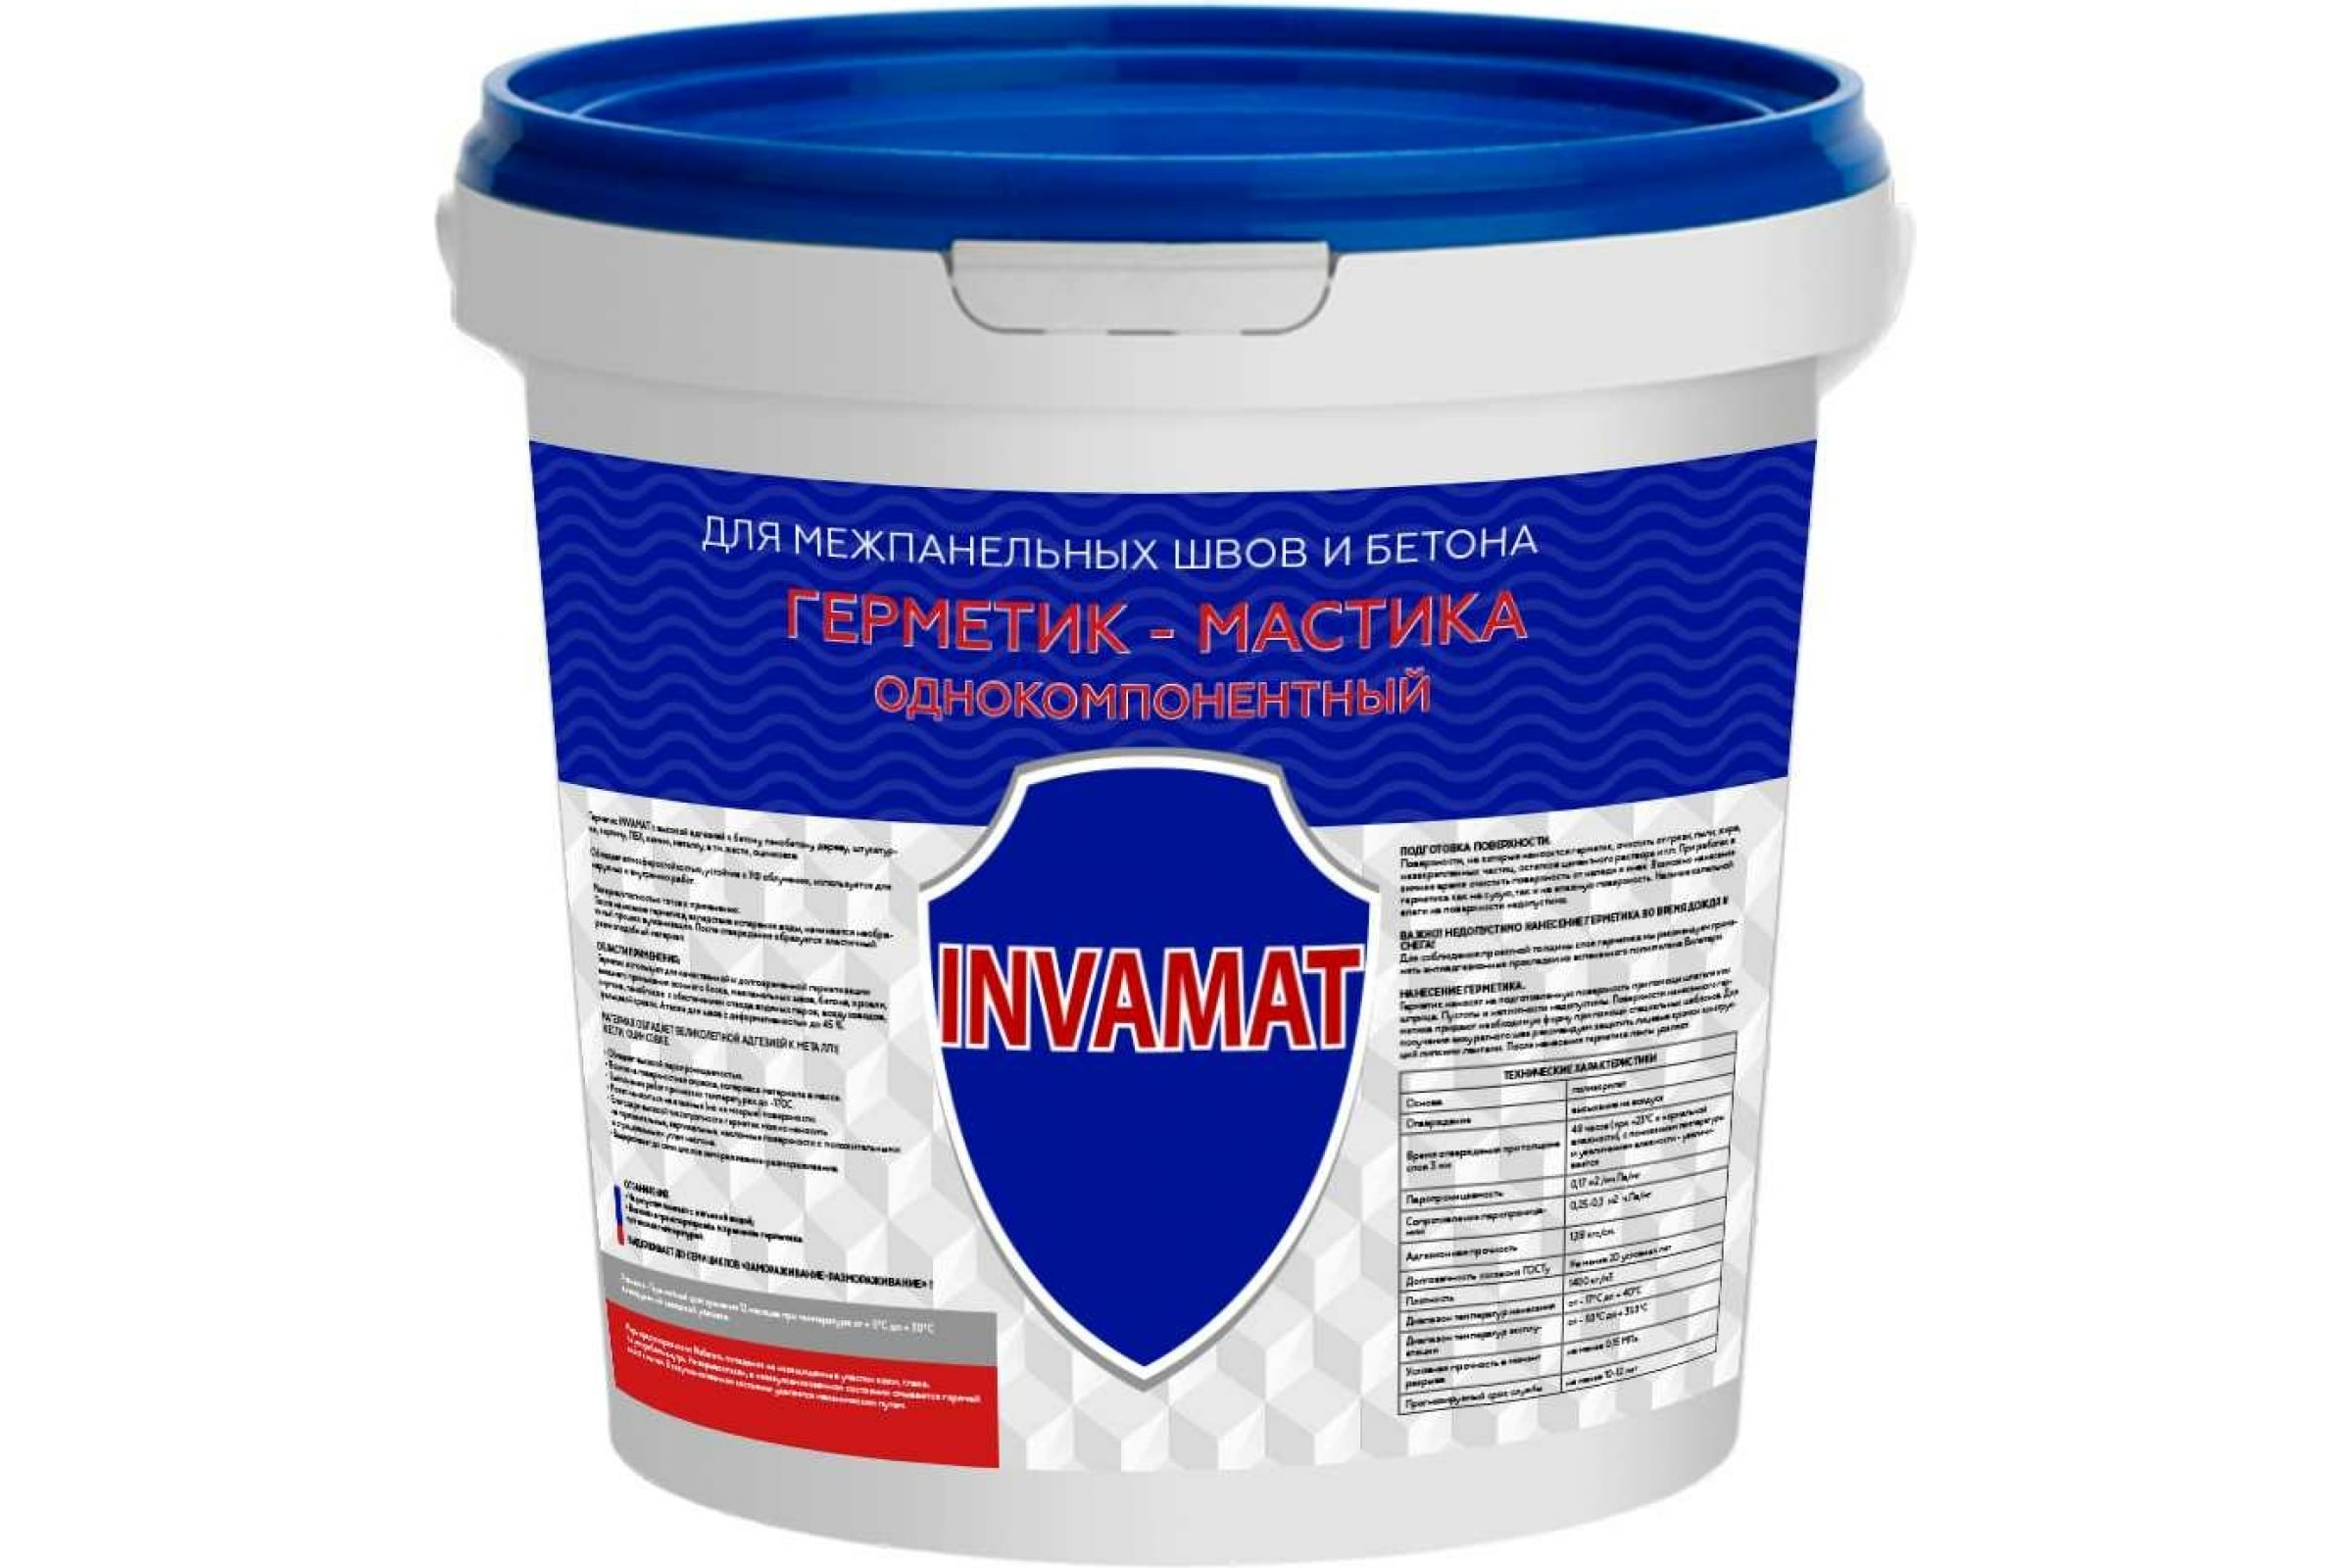 фото Invamat герметик для межпанельных швов и бетона серый 15 кг 1126